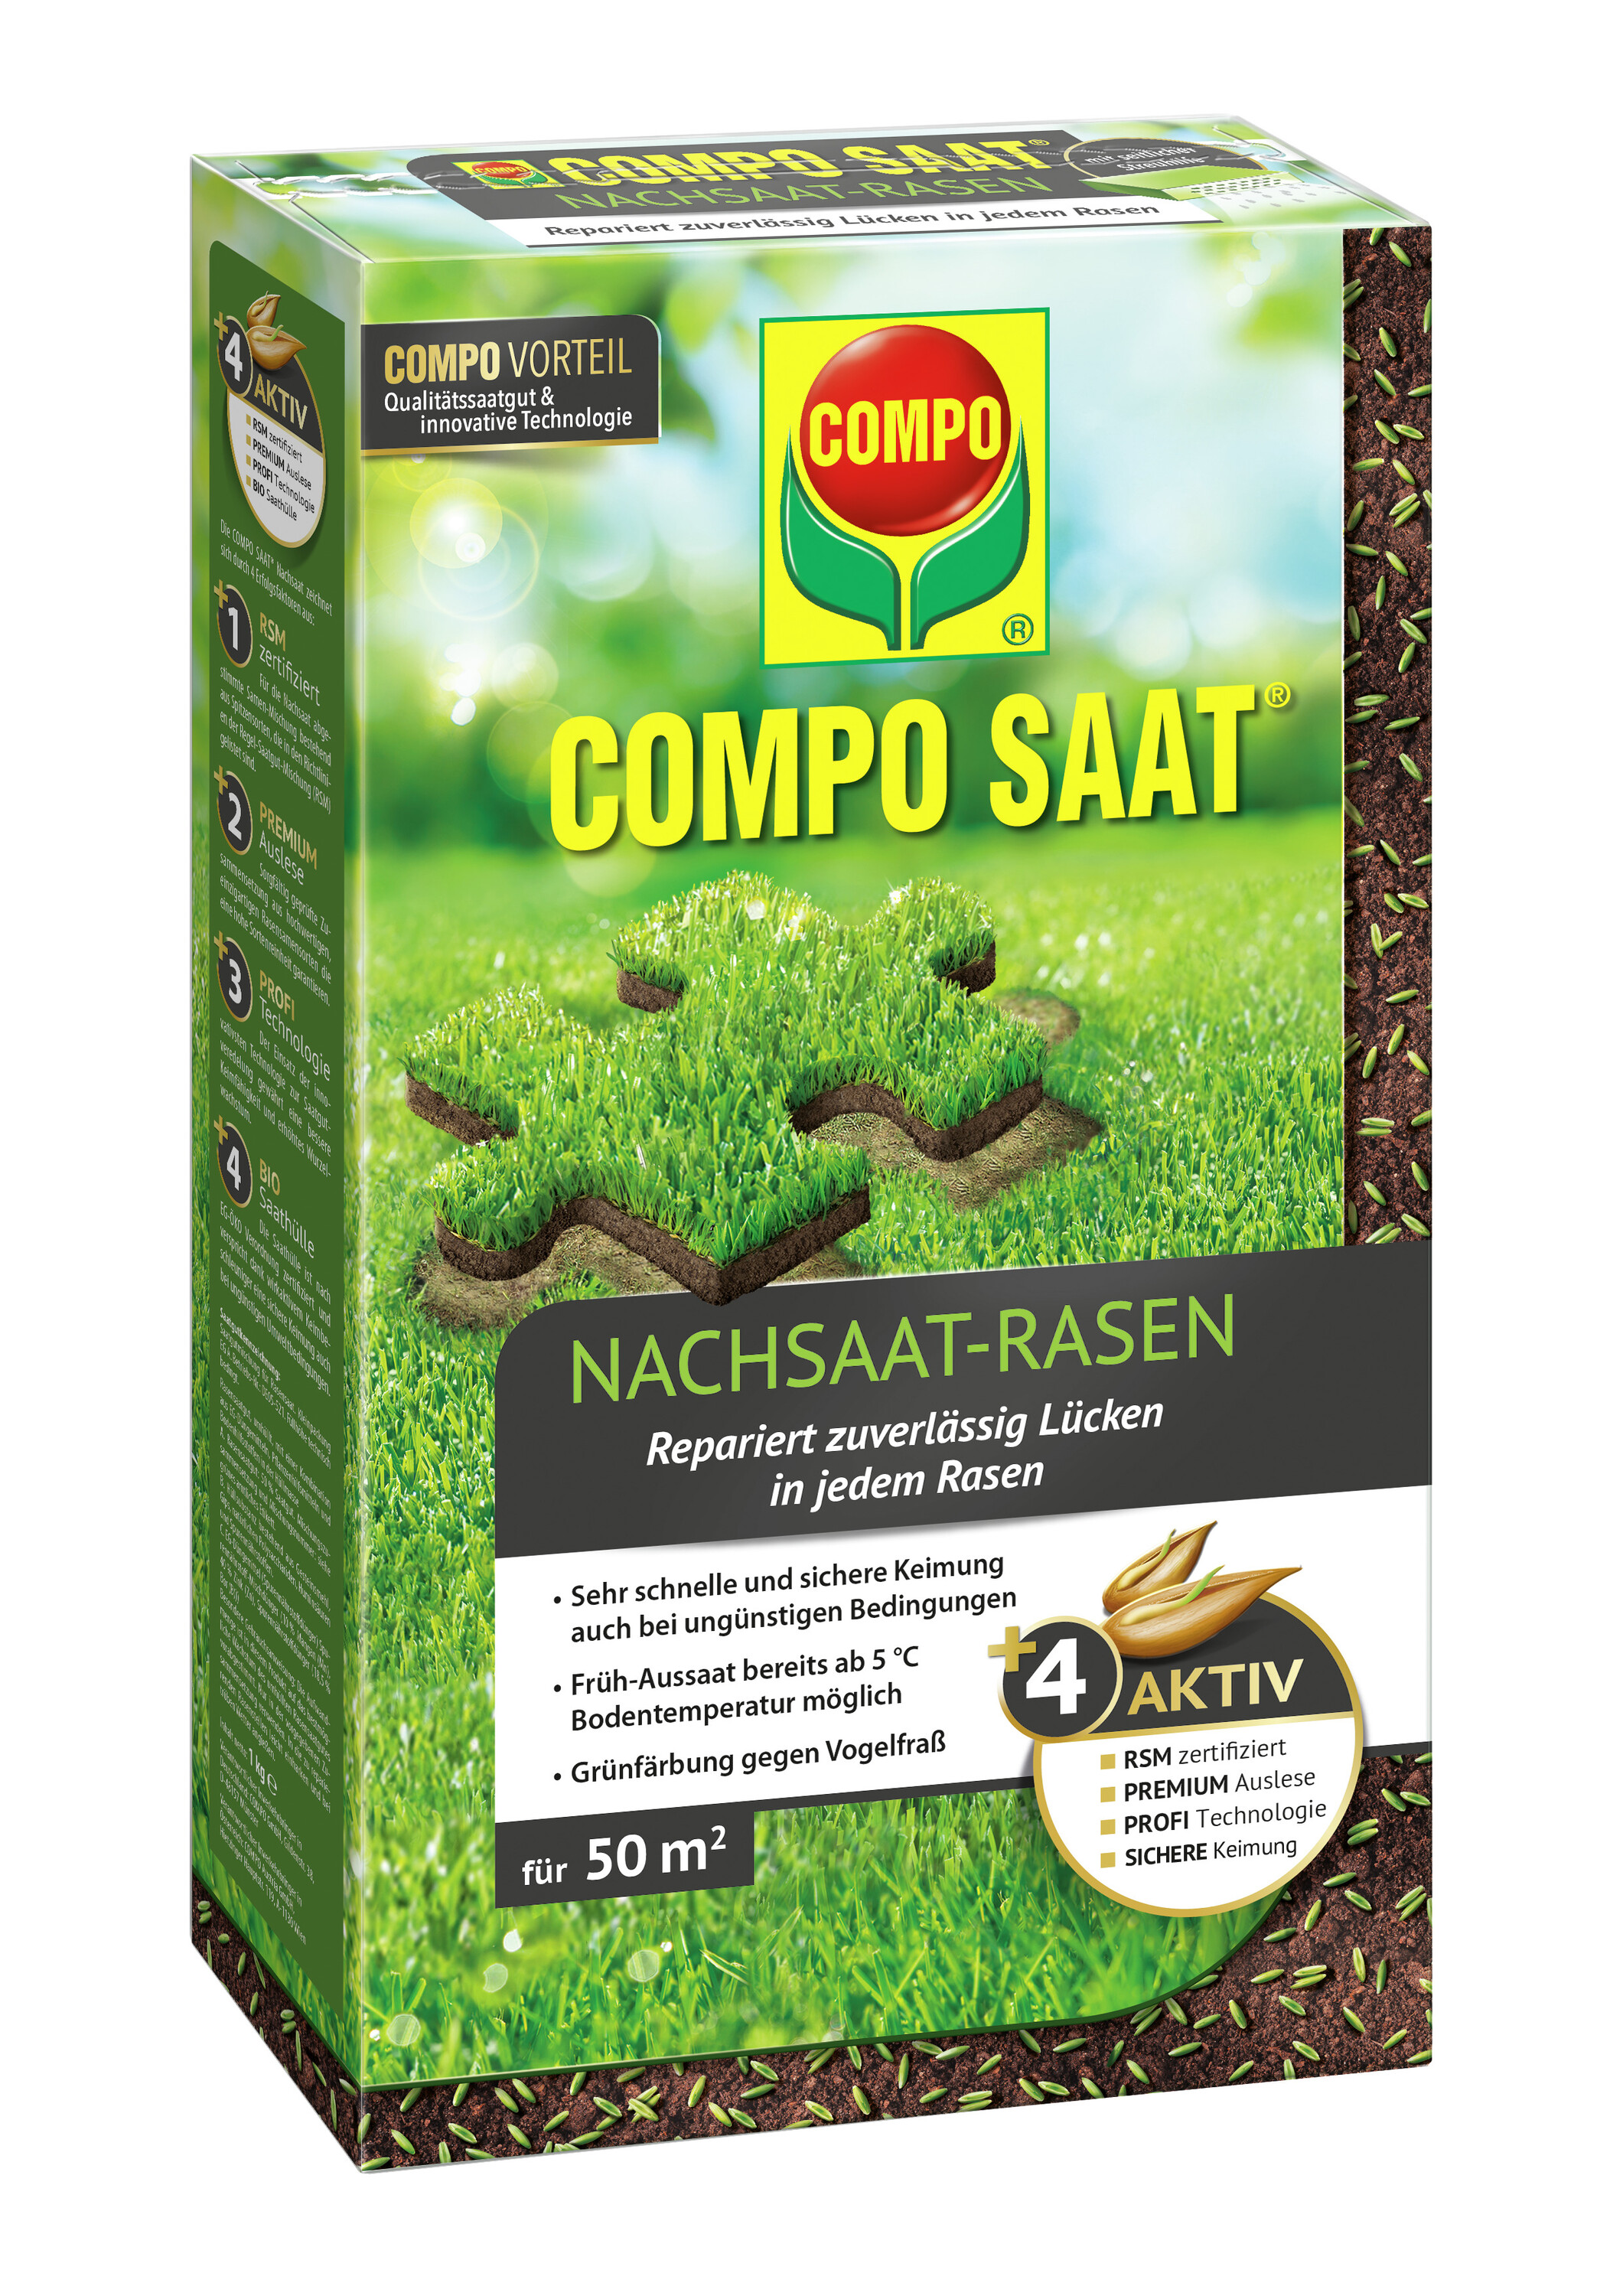 COMPO SAAT Nachsaat-Rasen 1 kg für ca. 50 m², Rasenlücken, Garten, Wiese